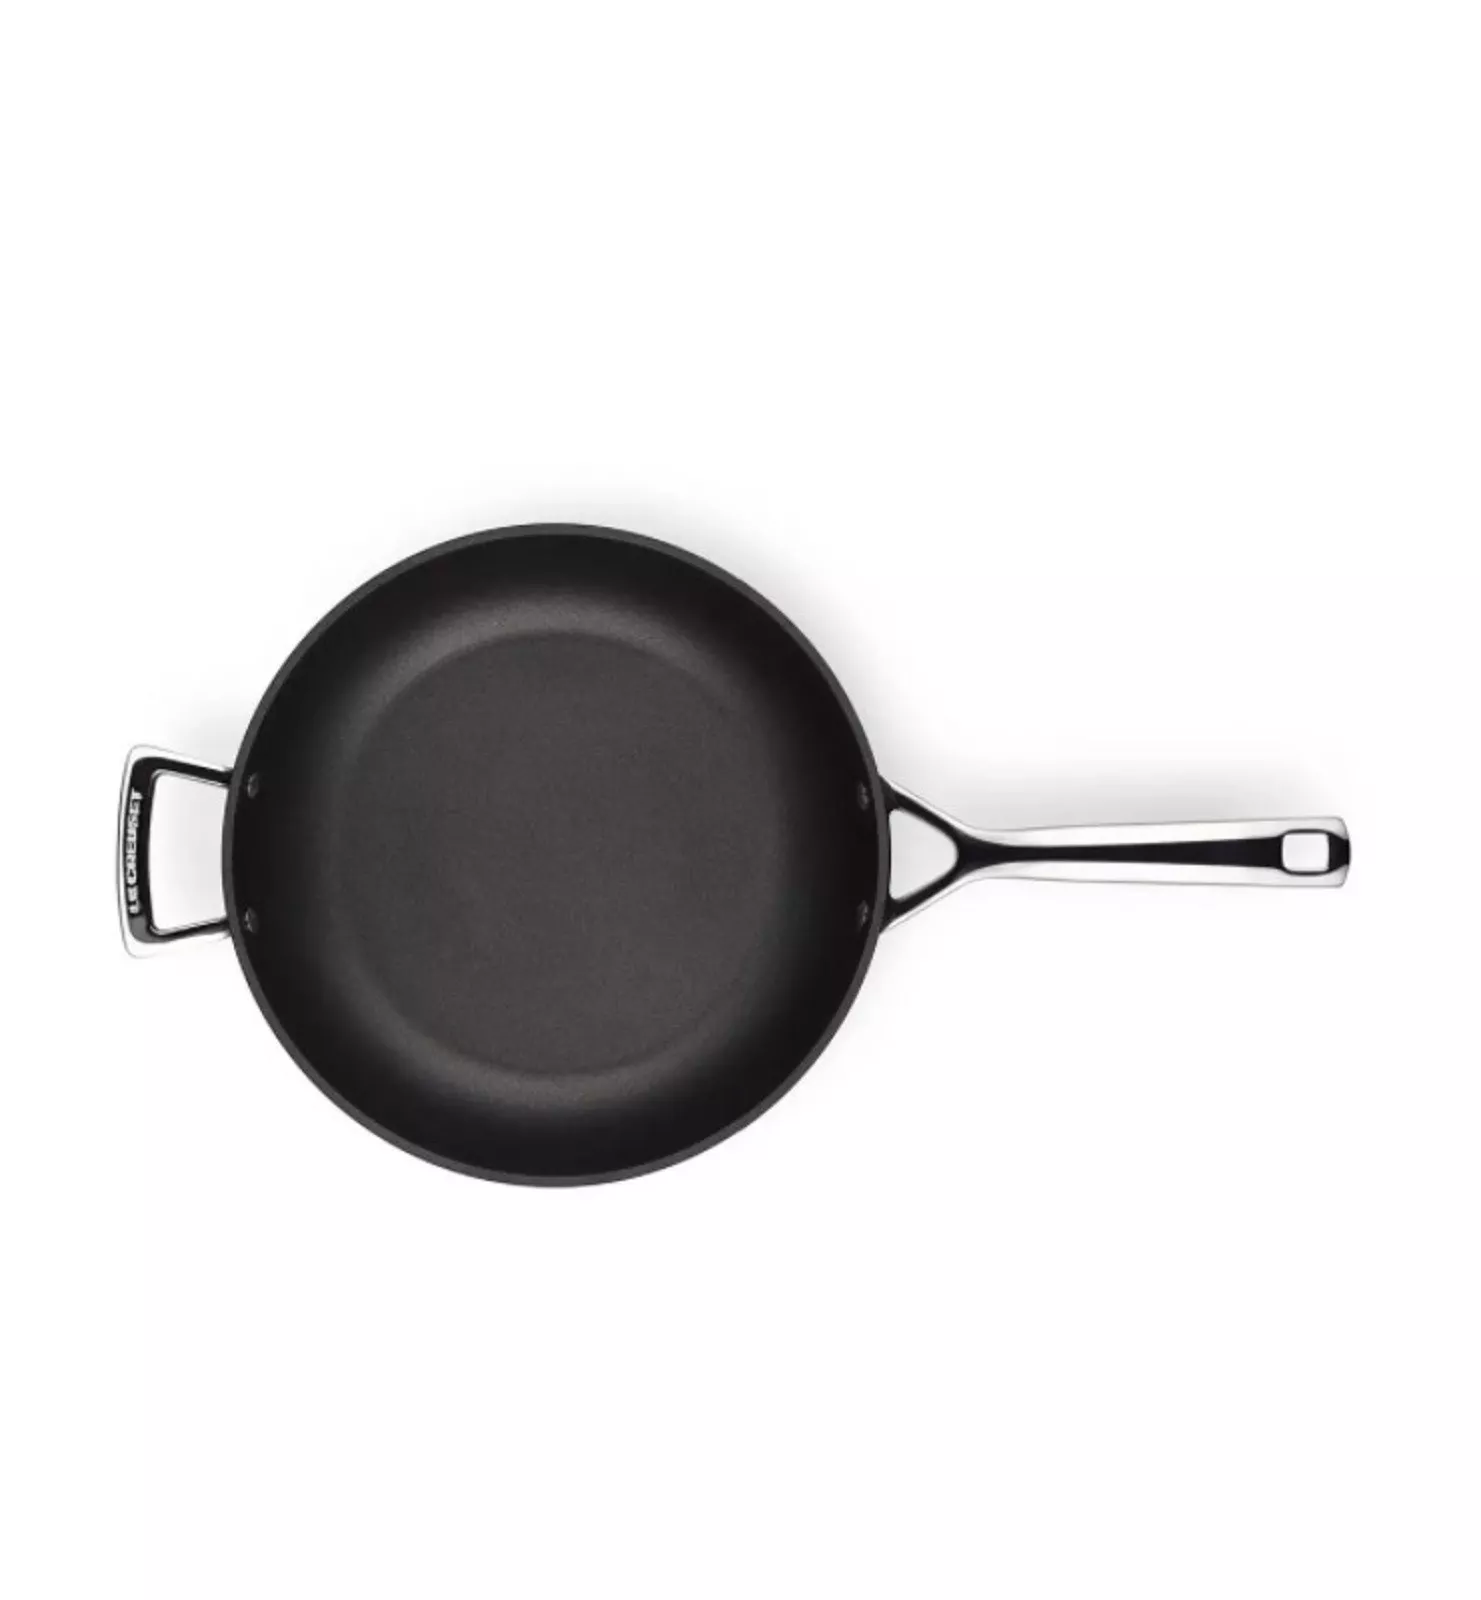 Сковорода глубокая антипригарная Le Creuset Tns & Cast Alu Black, диаметр 28 см (51101280010202) - Фото nav 4